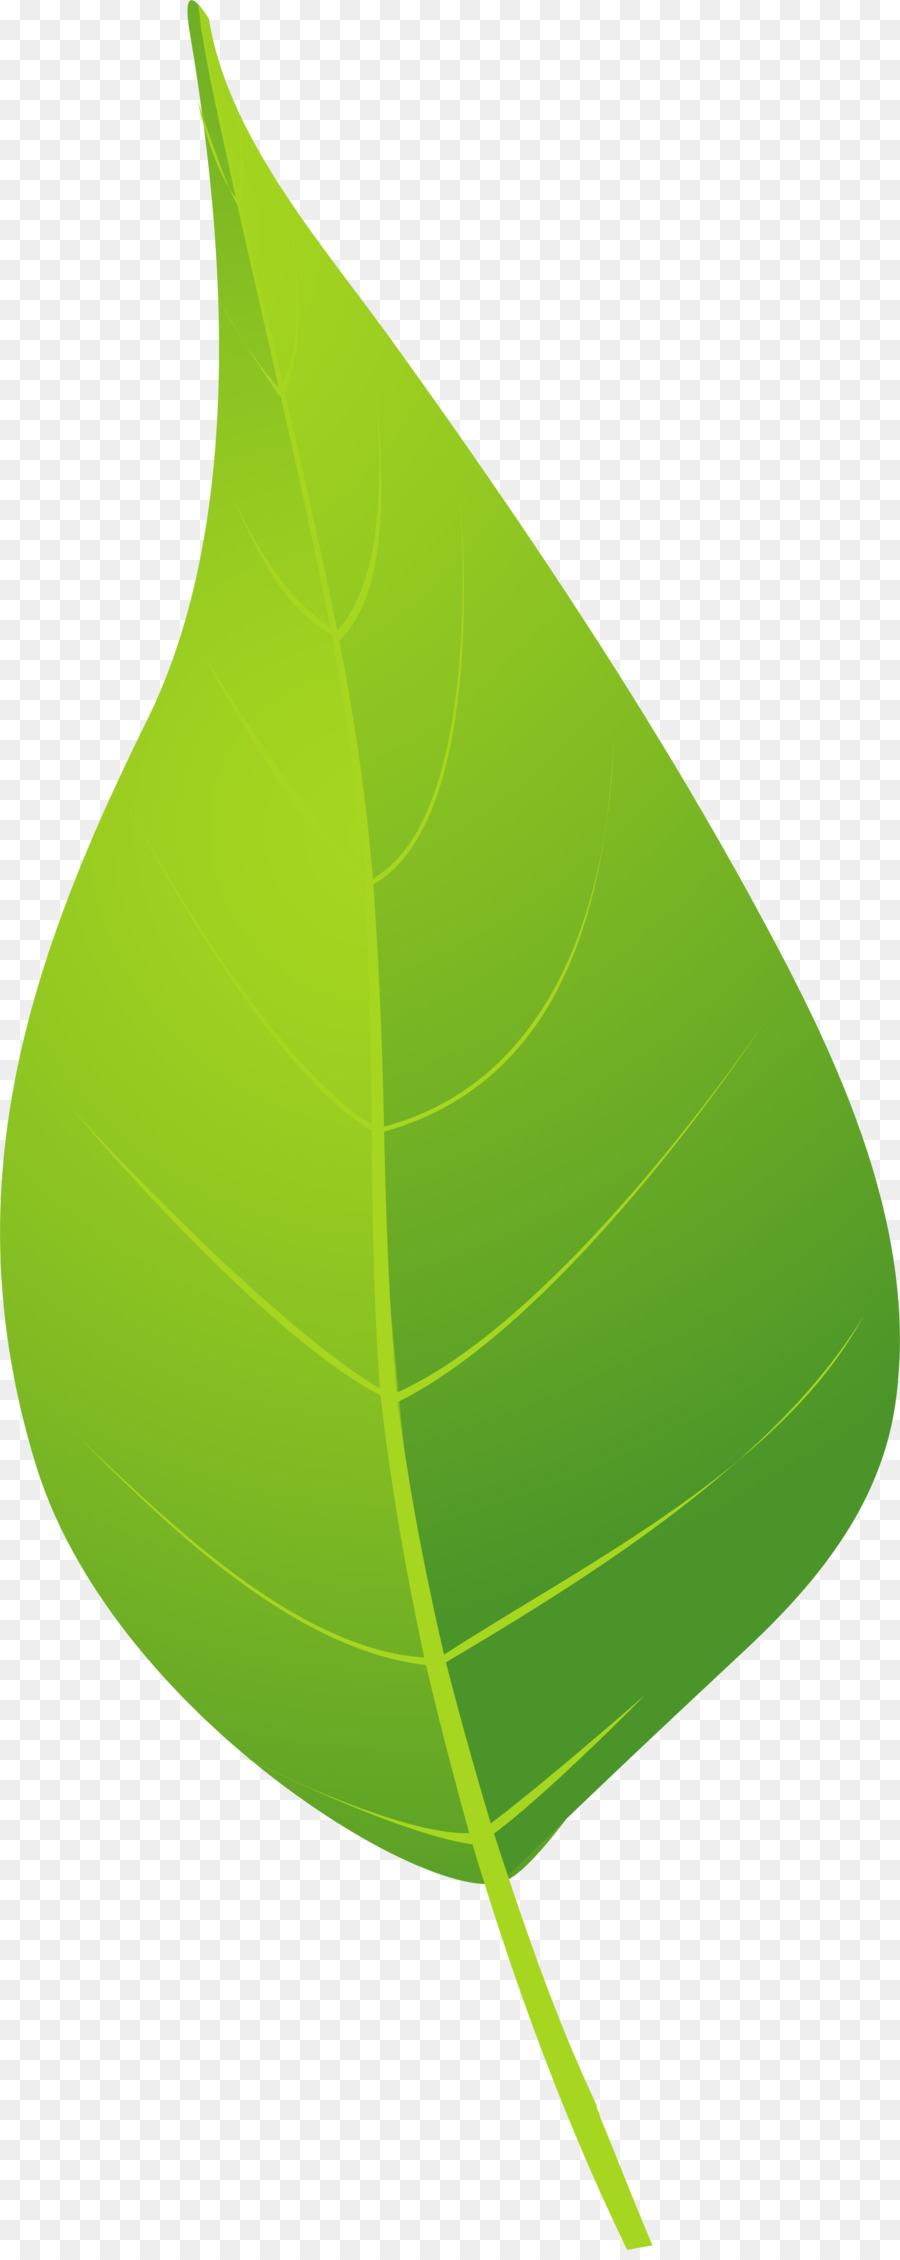 Google Images, Grün, Braun - Grüne und frische Blätter